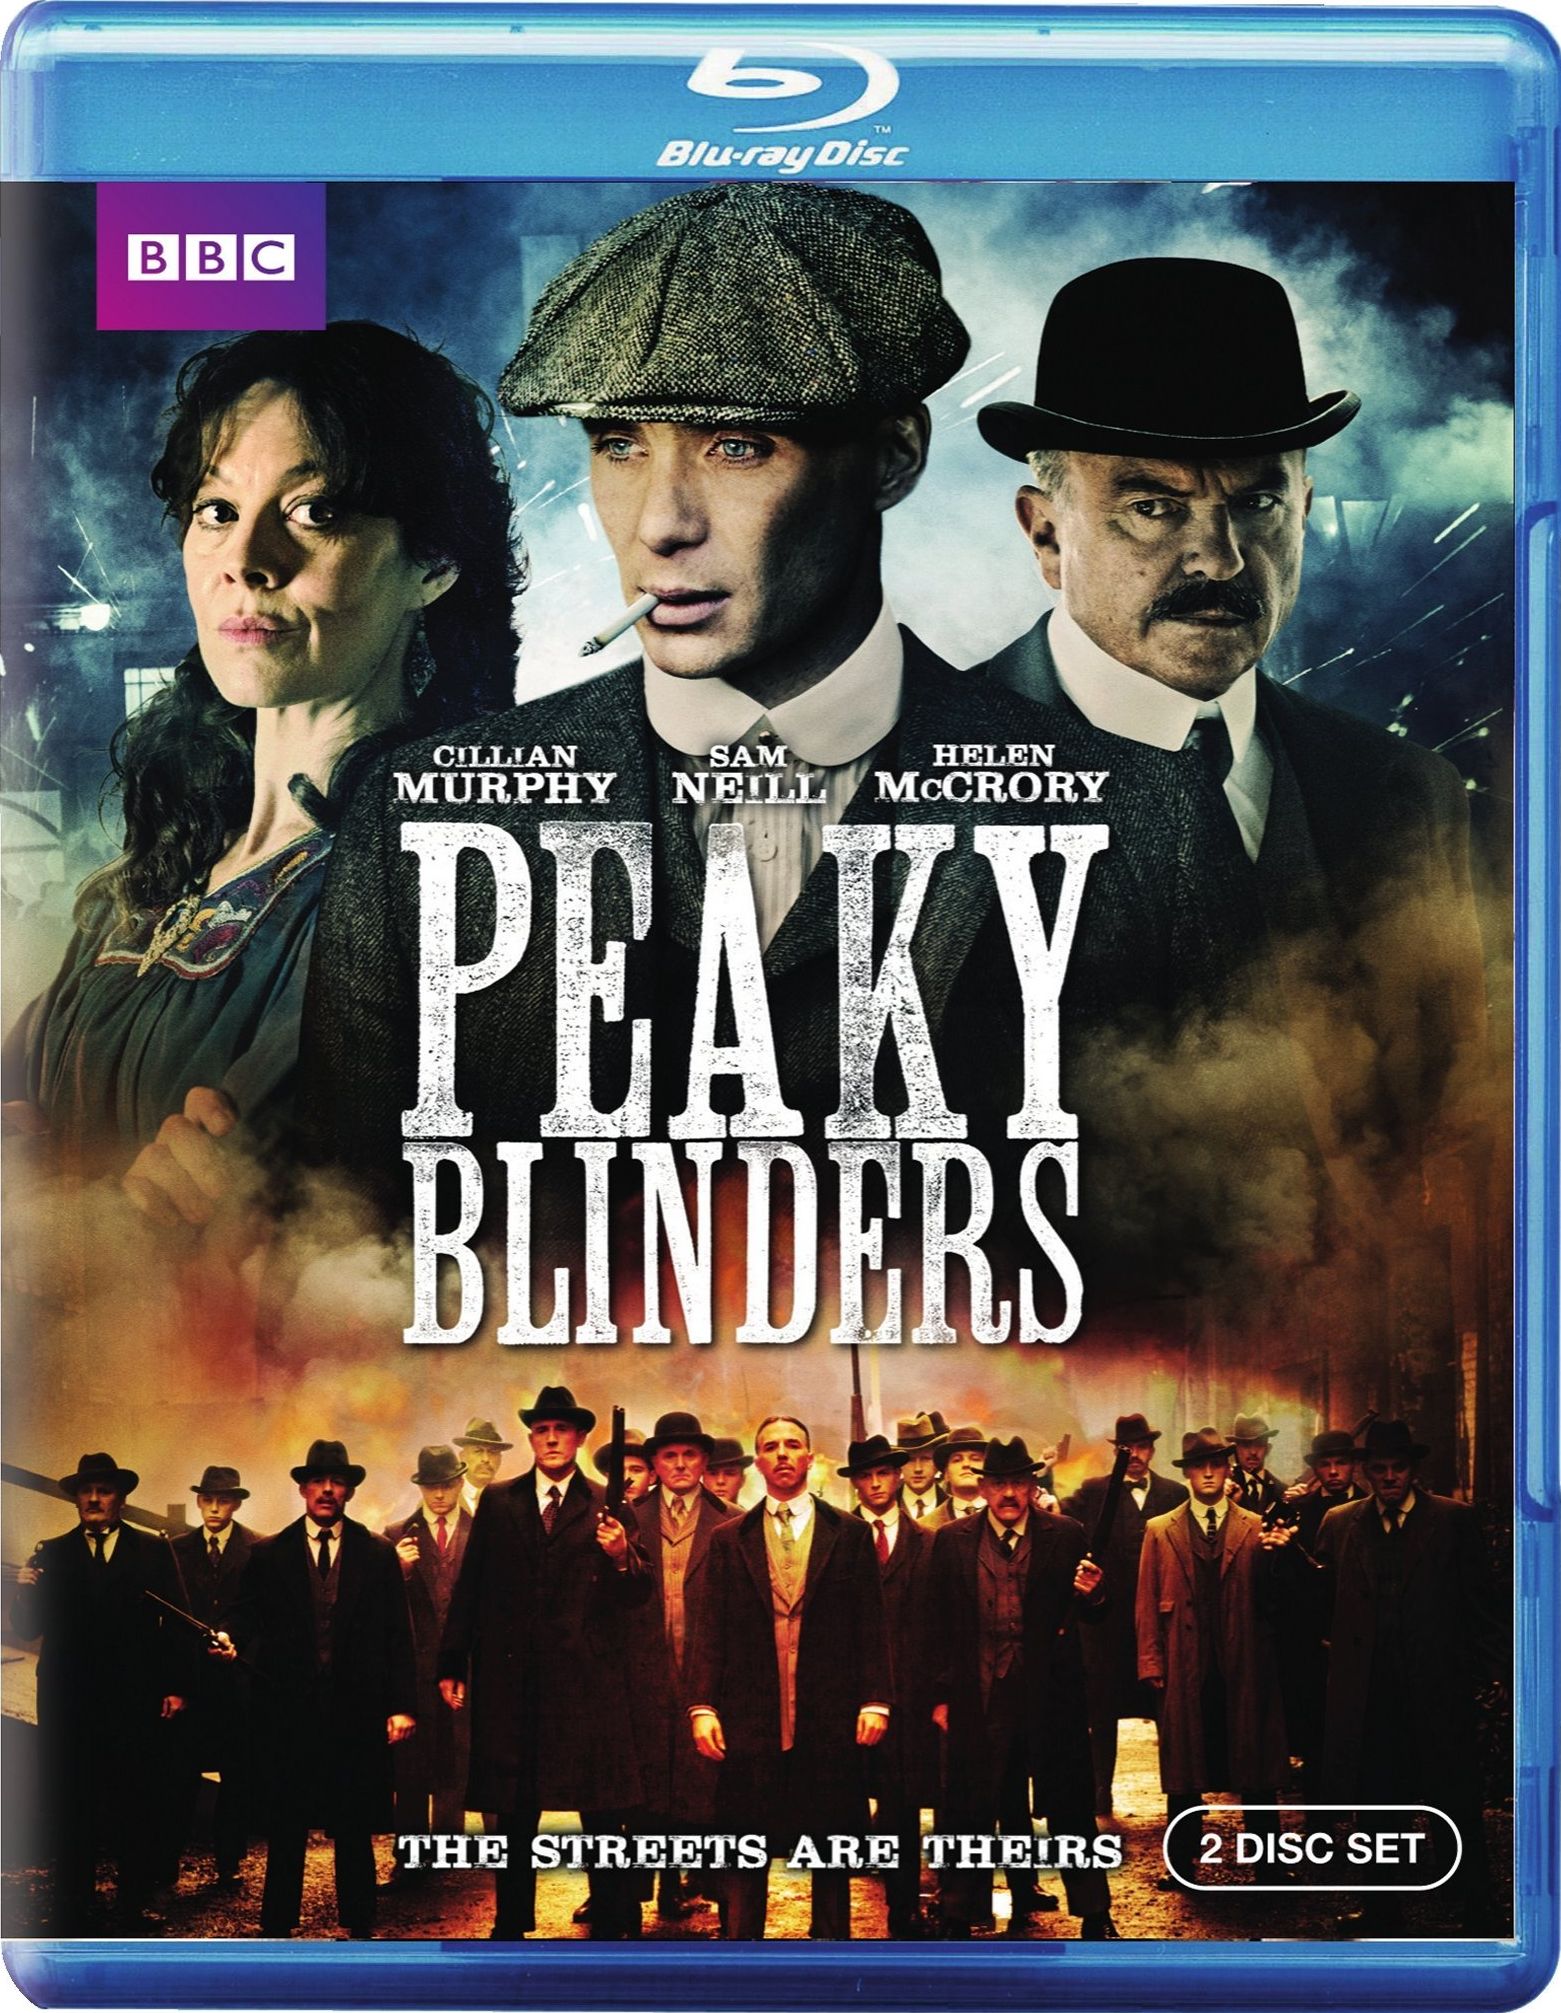 Peaky Blinders Dvd Release Date 